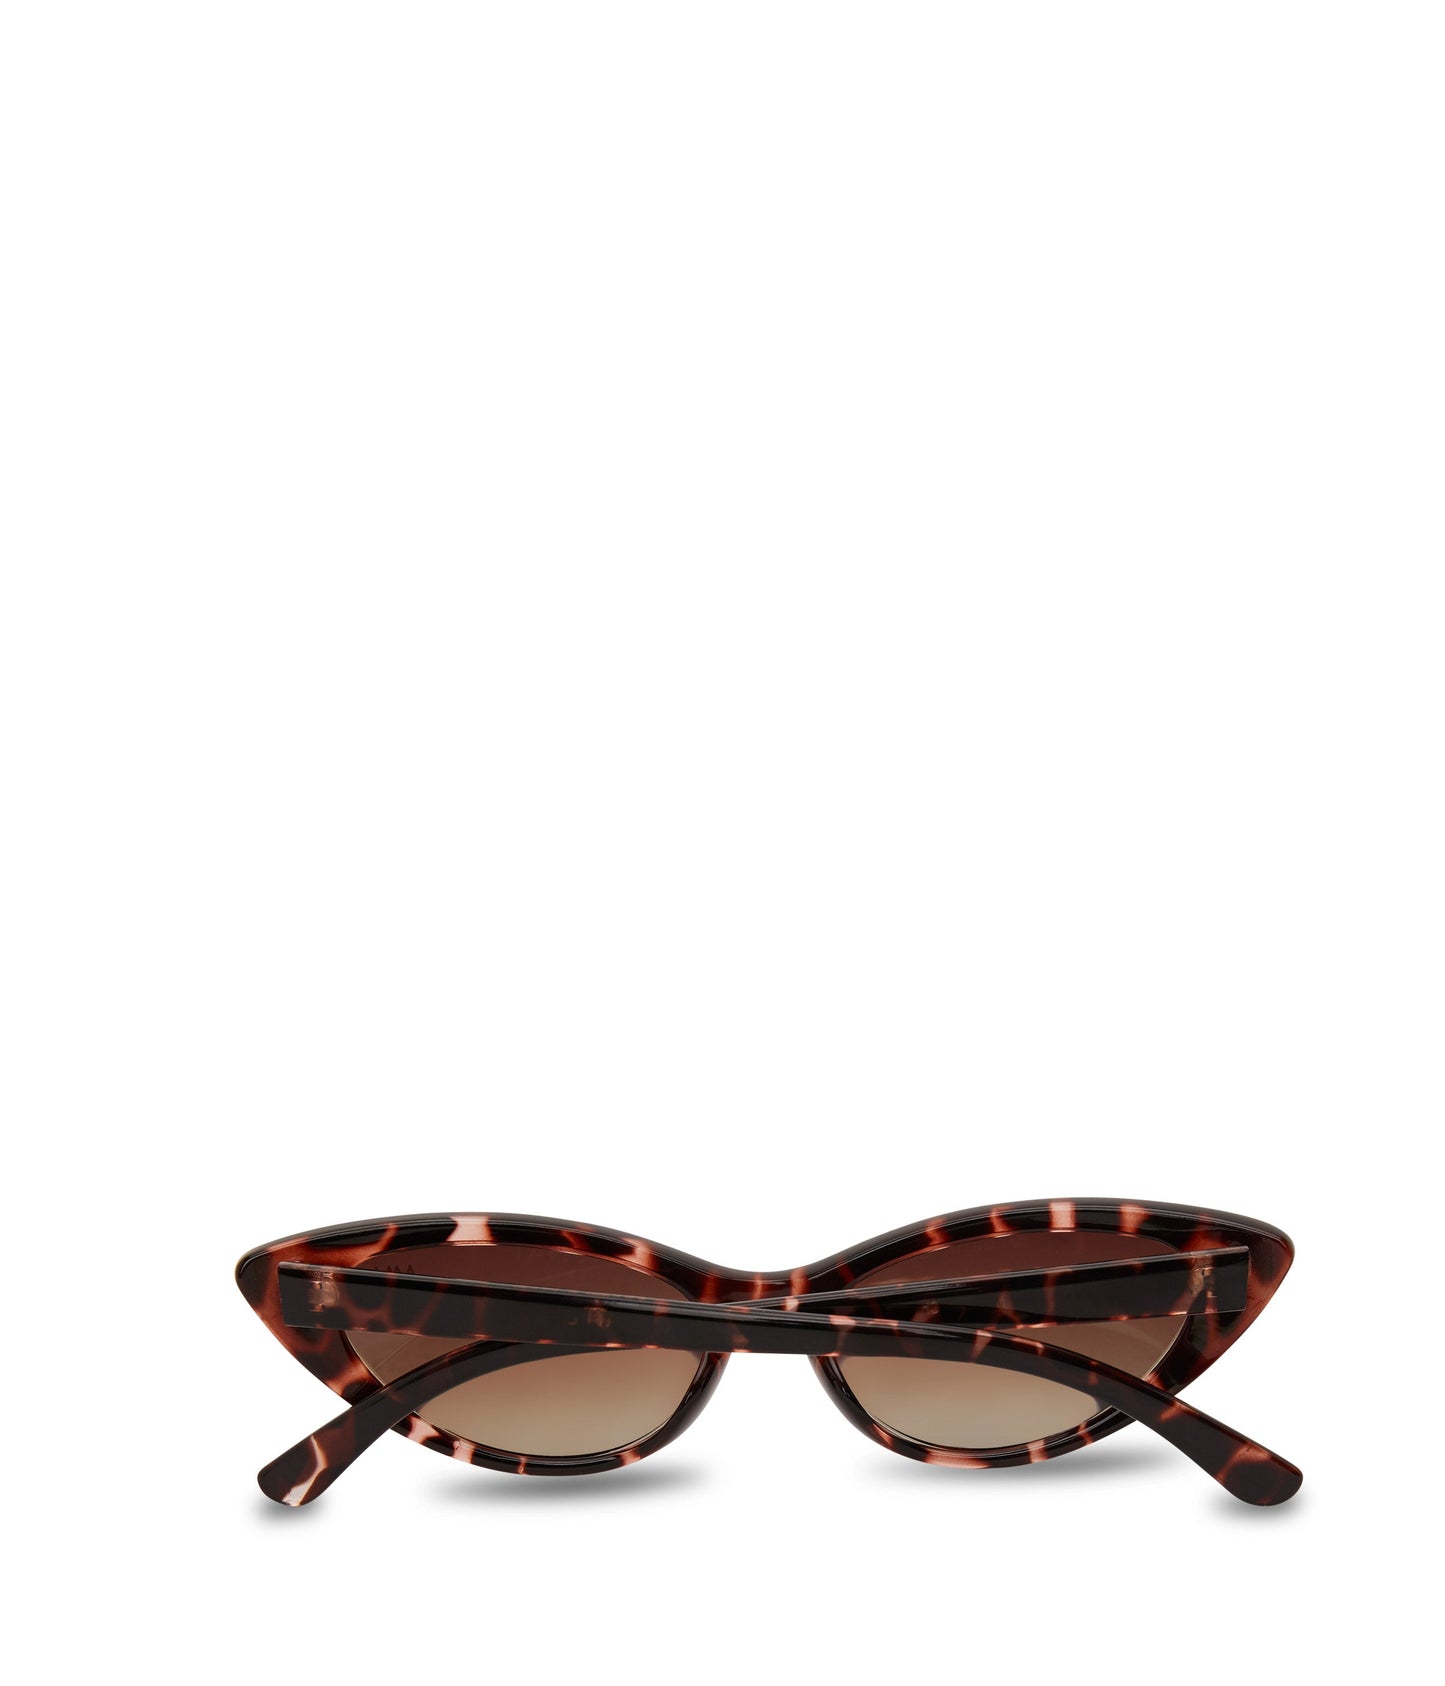 ELSA Cat-Eye Sunglasses | Color: Brown - variant::brown